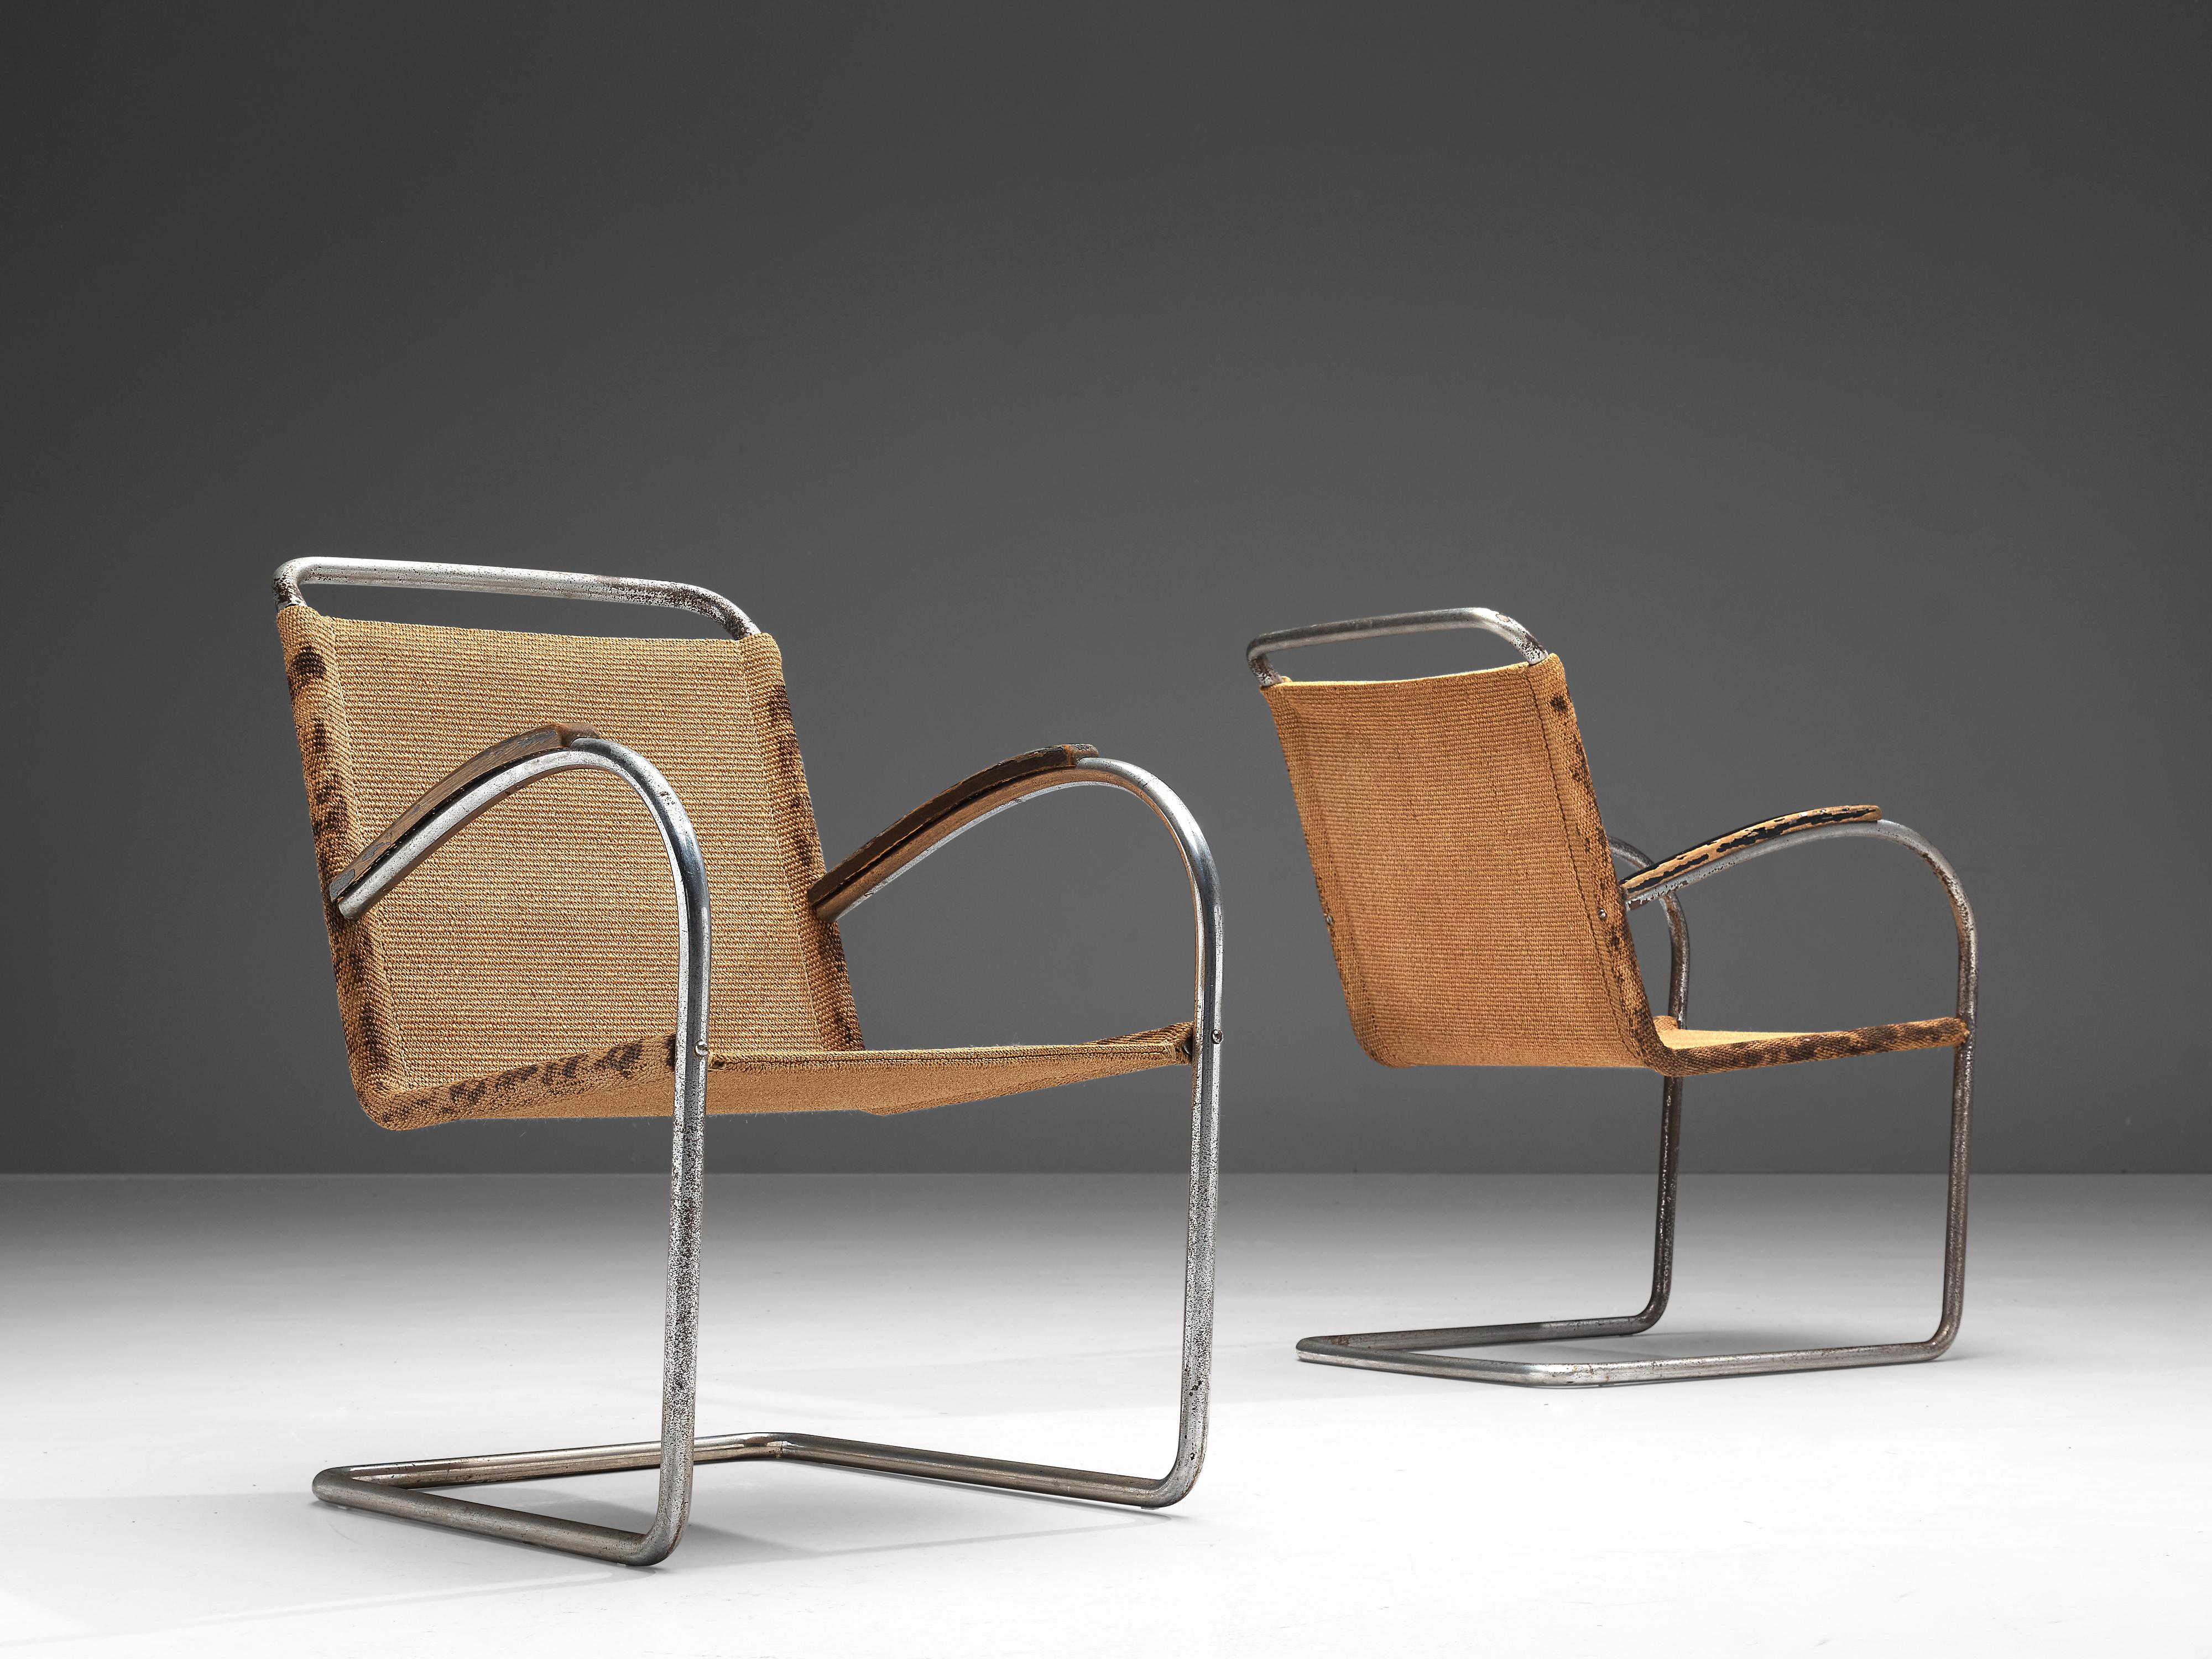 Bas van Pelt pour E.M.S. Overschie, paire de fauteuils, acier chromé, sisal, bois laqué, Pays-Bas, années 1930.

Ces chaises confortables et originales sont l'œuvre du designer d'intérieur et de mobilier néerlandais Bas van Pelt (1900-1945) et ont